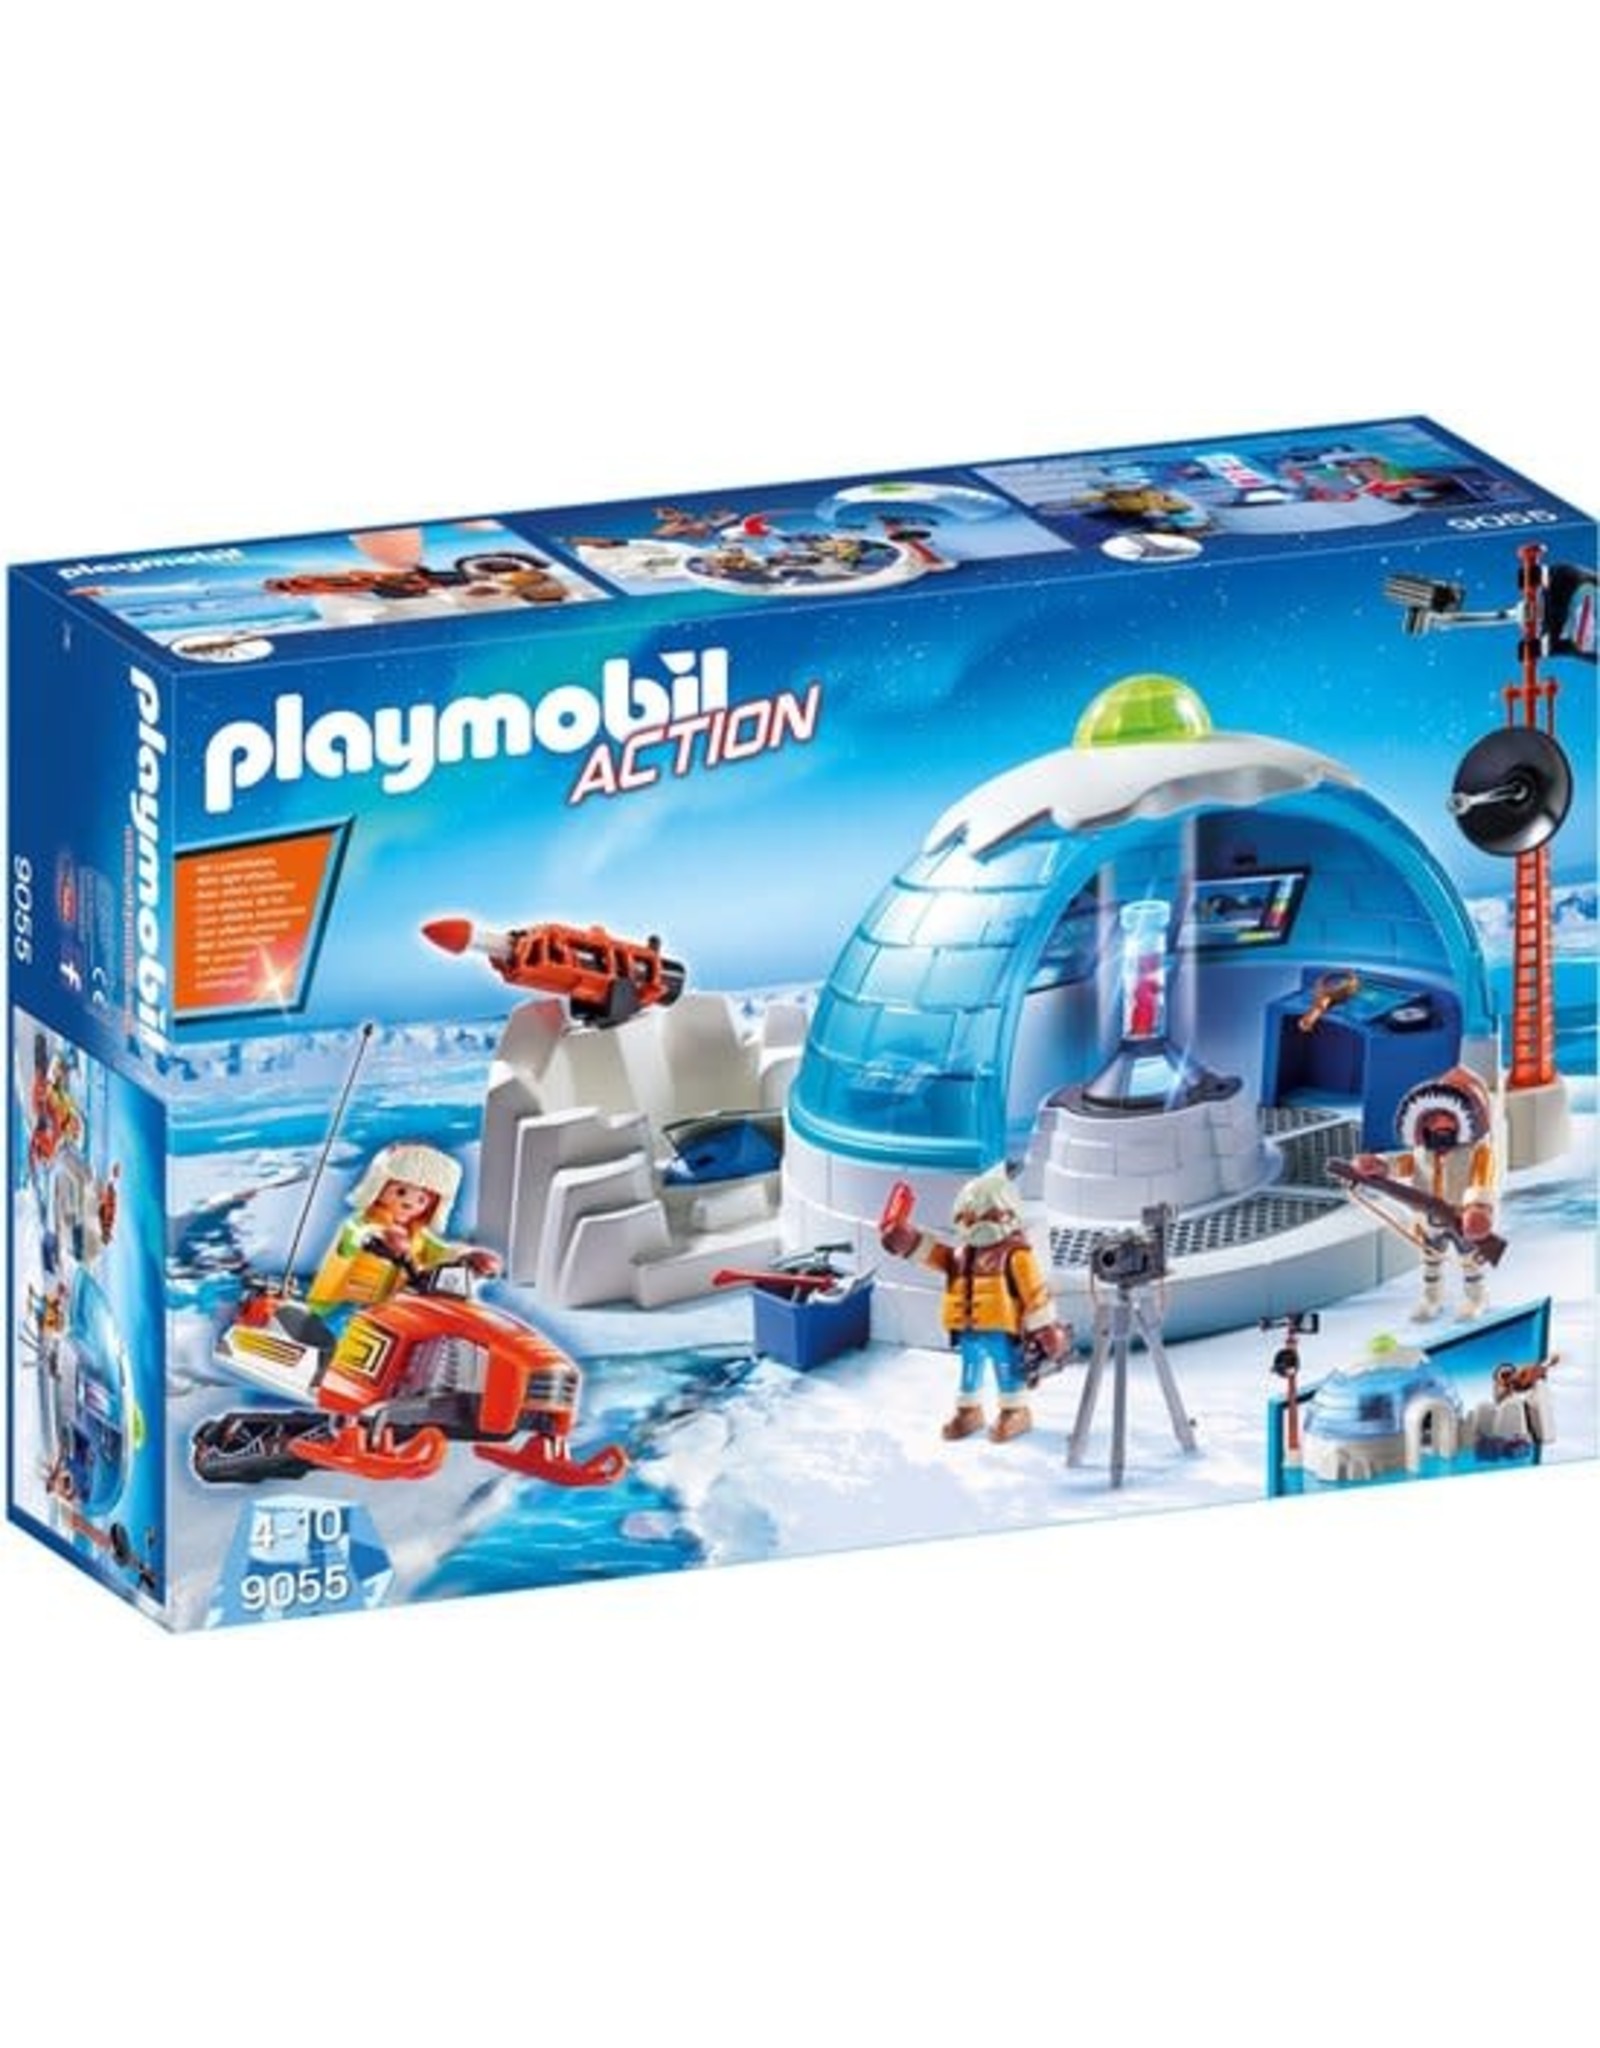 Playmobil Playmobil Action 9055 Hoofdkwartier Poolexpeditie